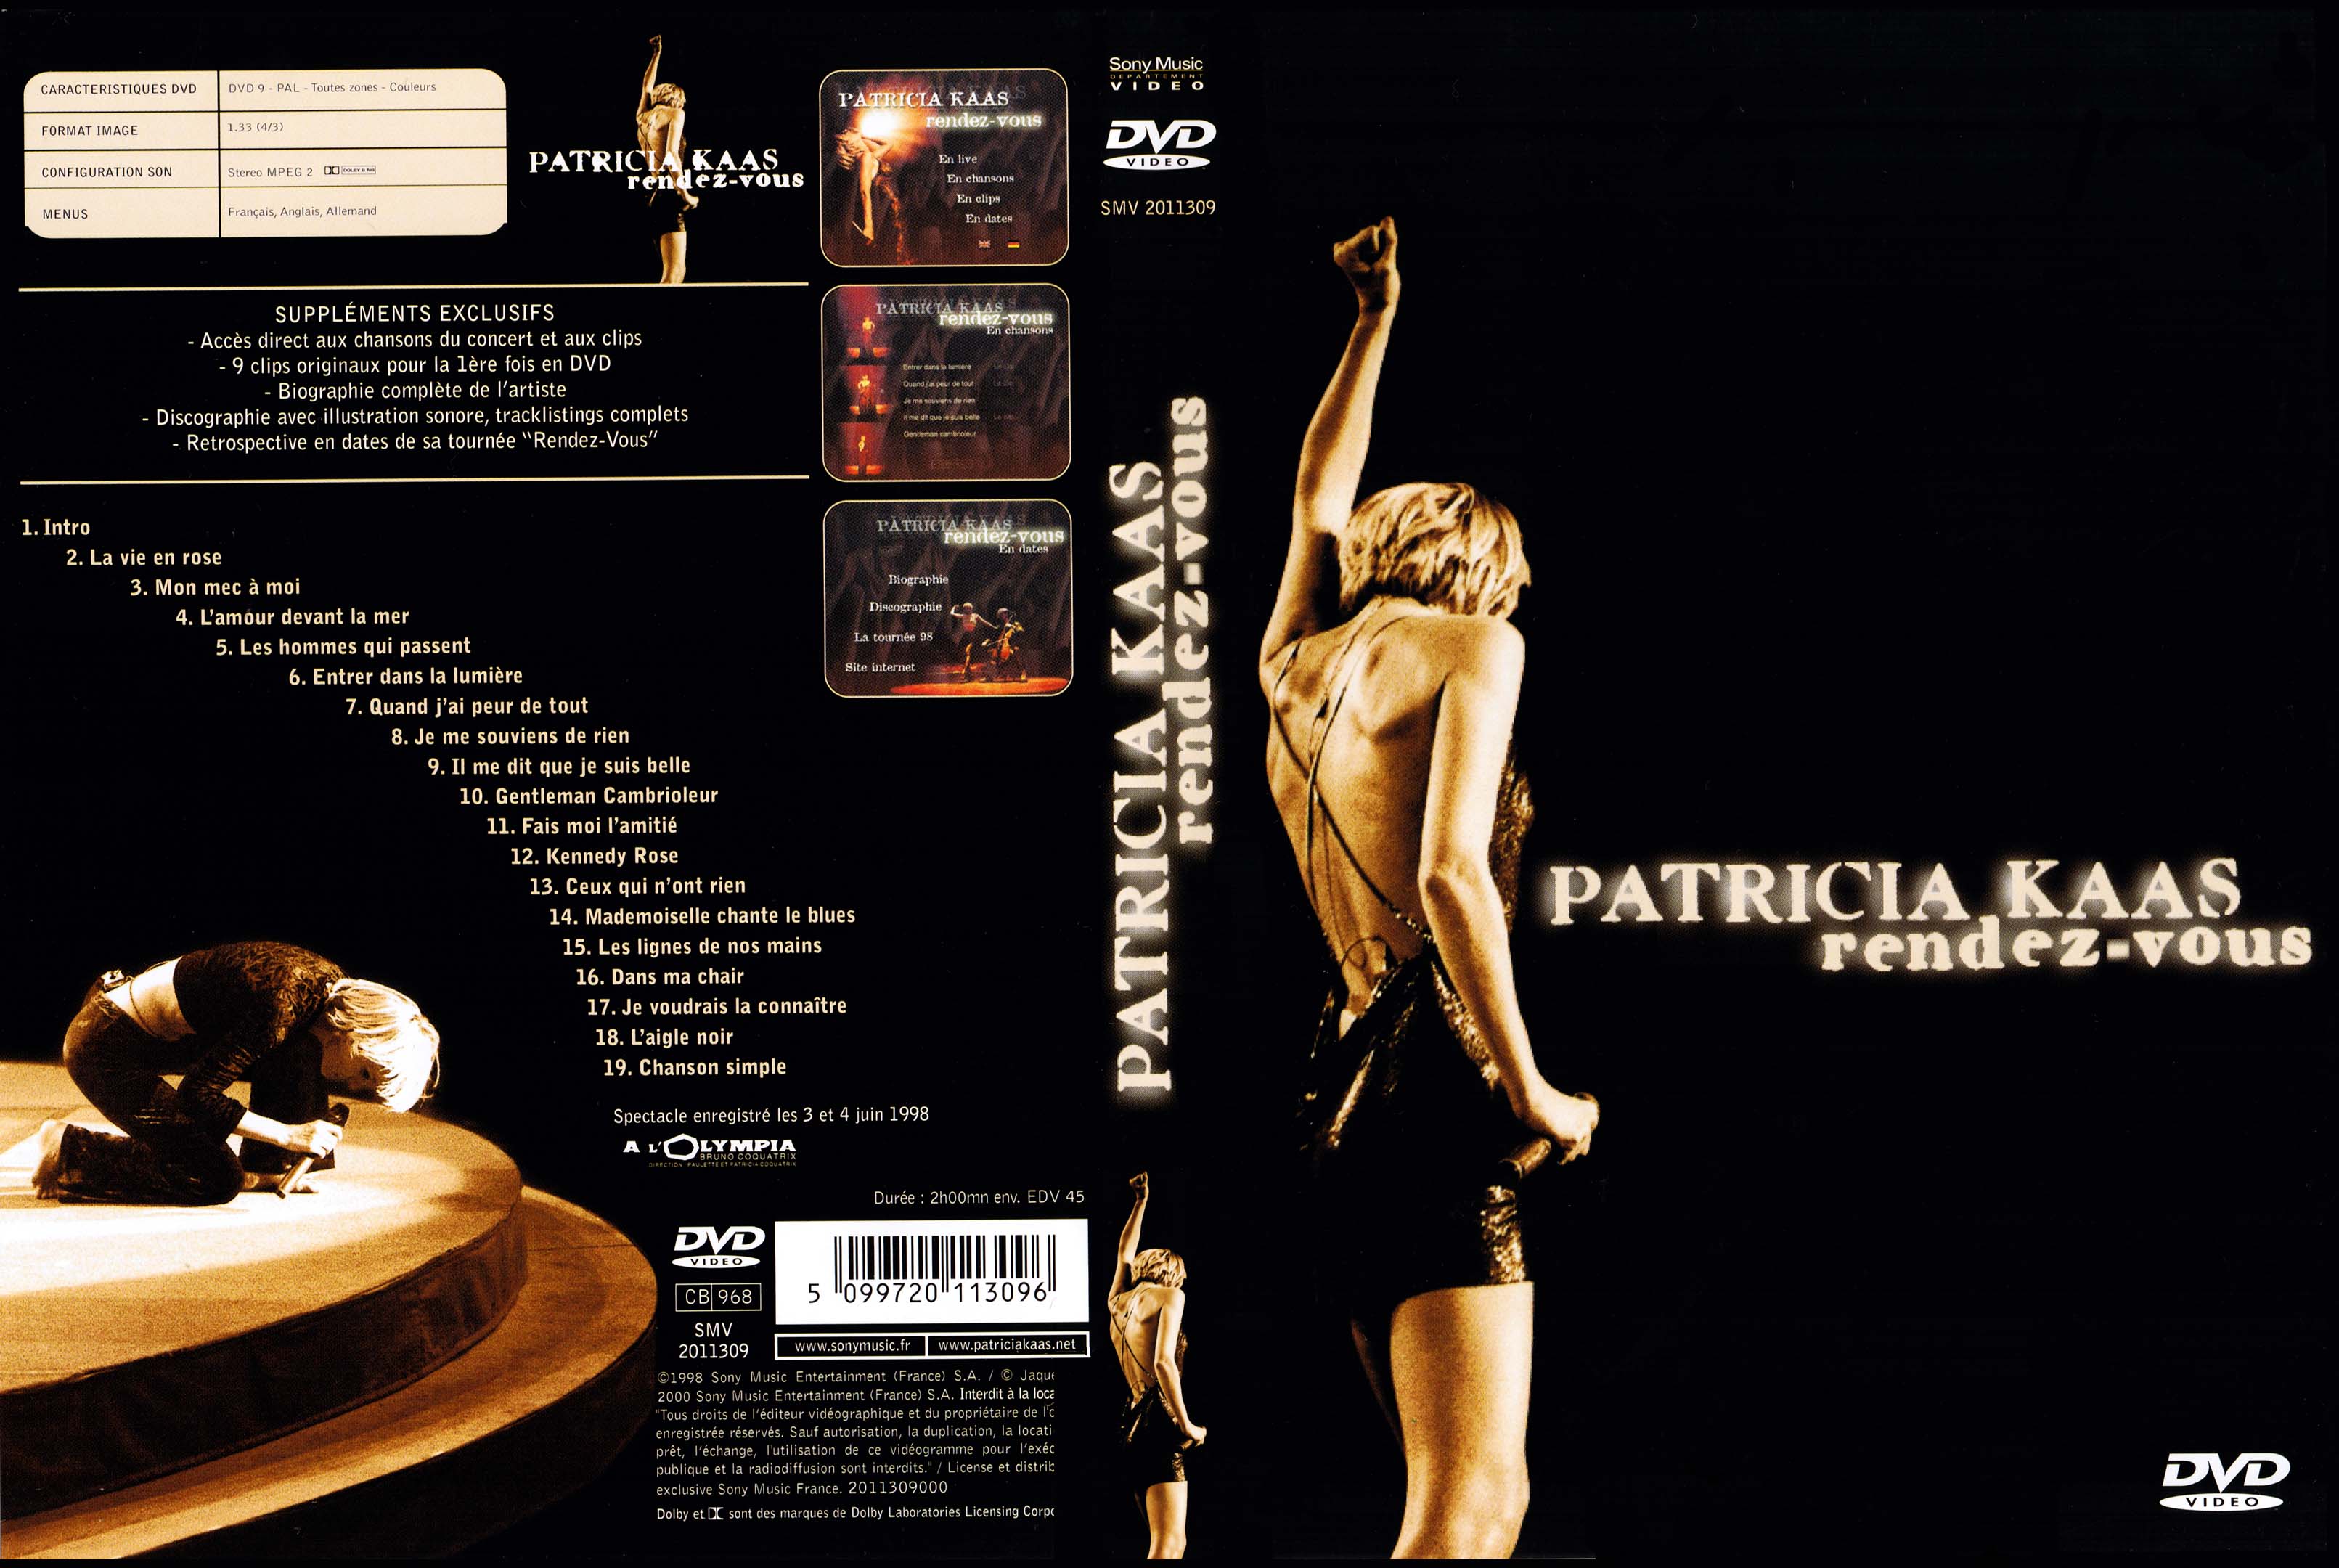 Jaquette DVD Patricia Kaas Rendez-vous